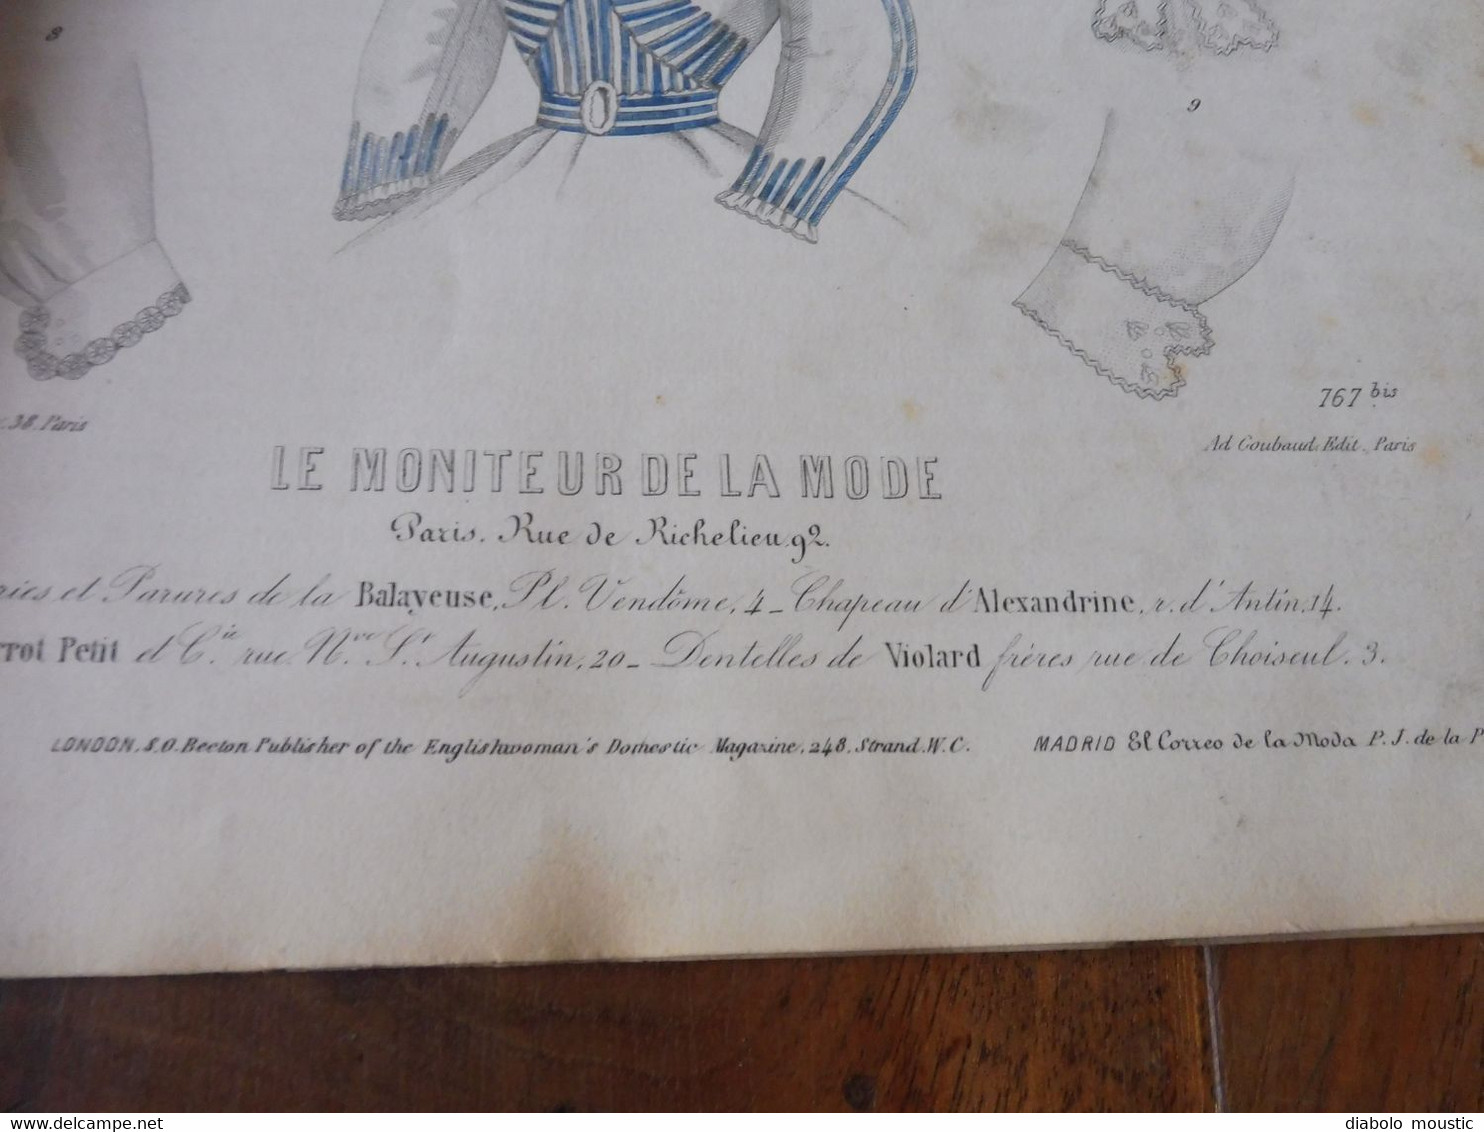 1865 MMM Gravures originales  " CHAPEAUX et PARURES ,  etc  " ; dim.= 21cm x 29cm (orig. Le Moniteur de la Mode)